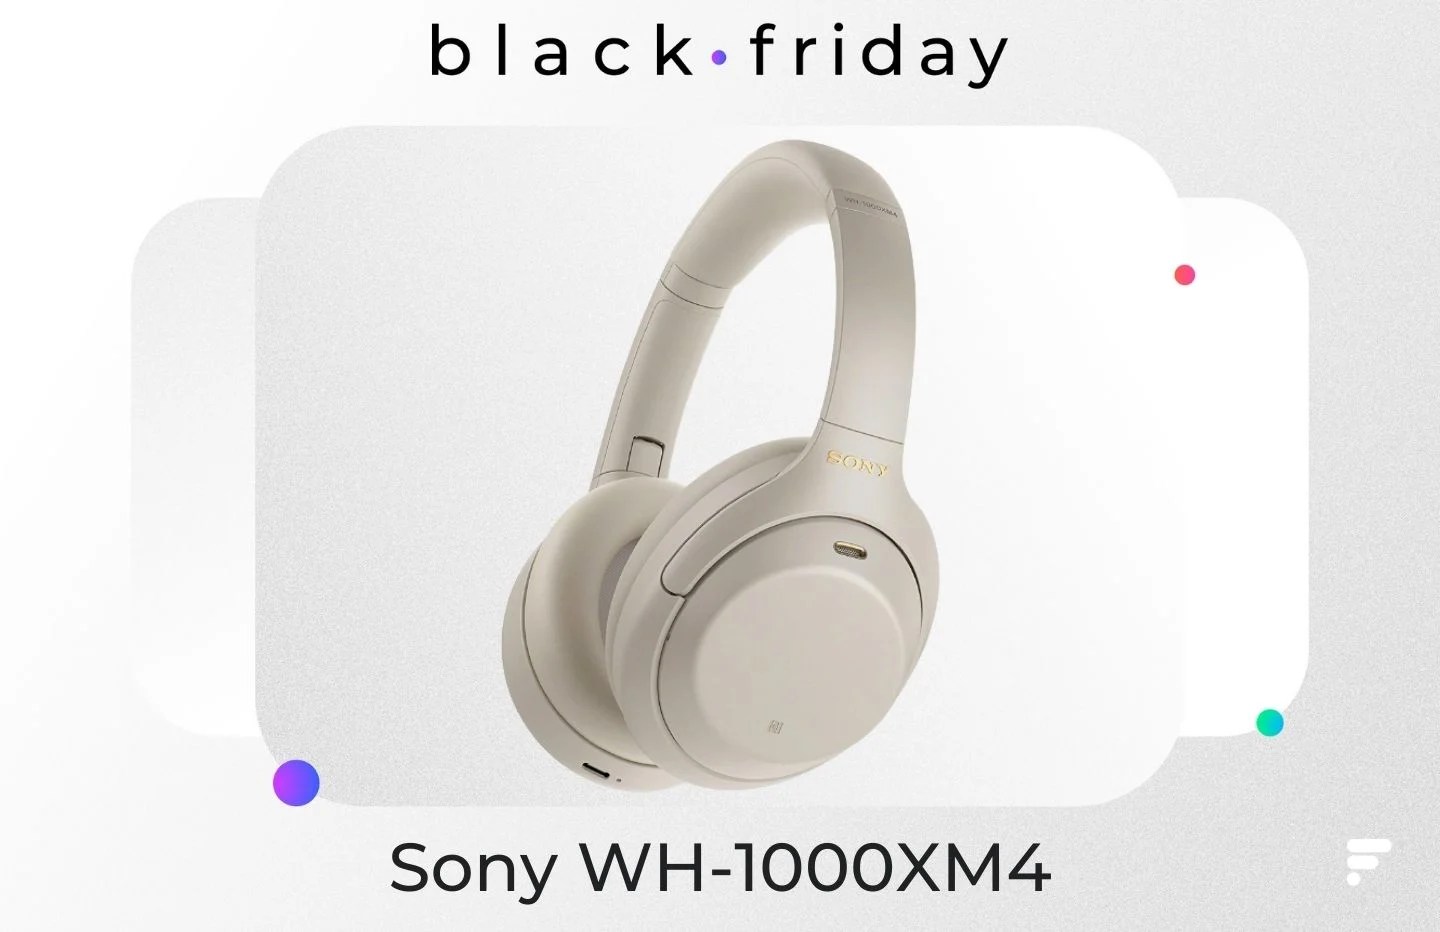 259 € au lieu de 380 €, c’est le prix inédit du Sony WH-1000XM4 pour le Black Friday